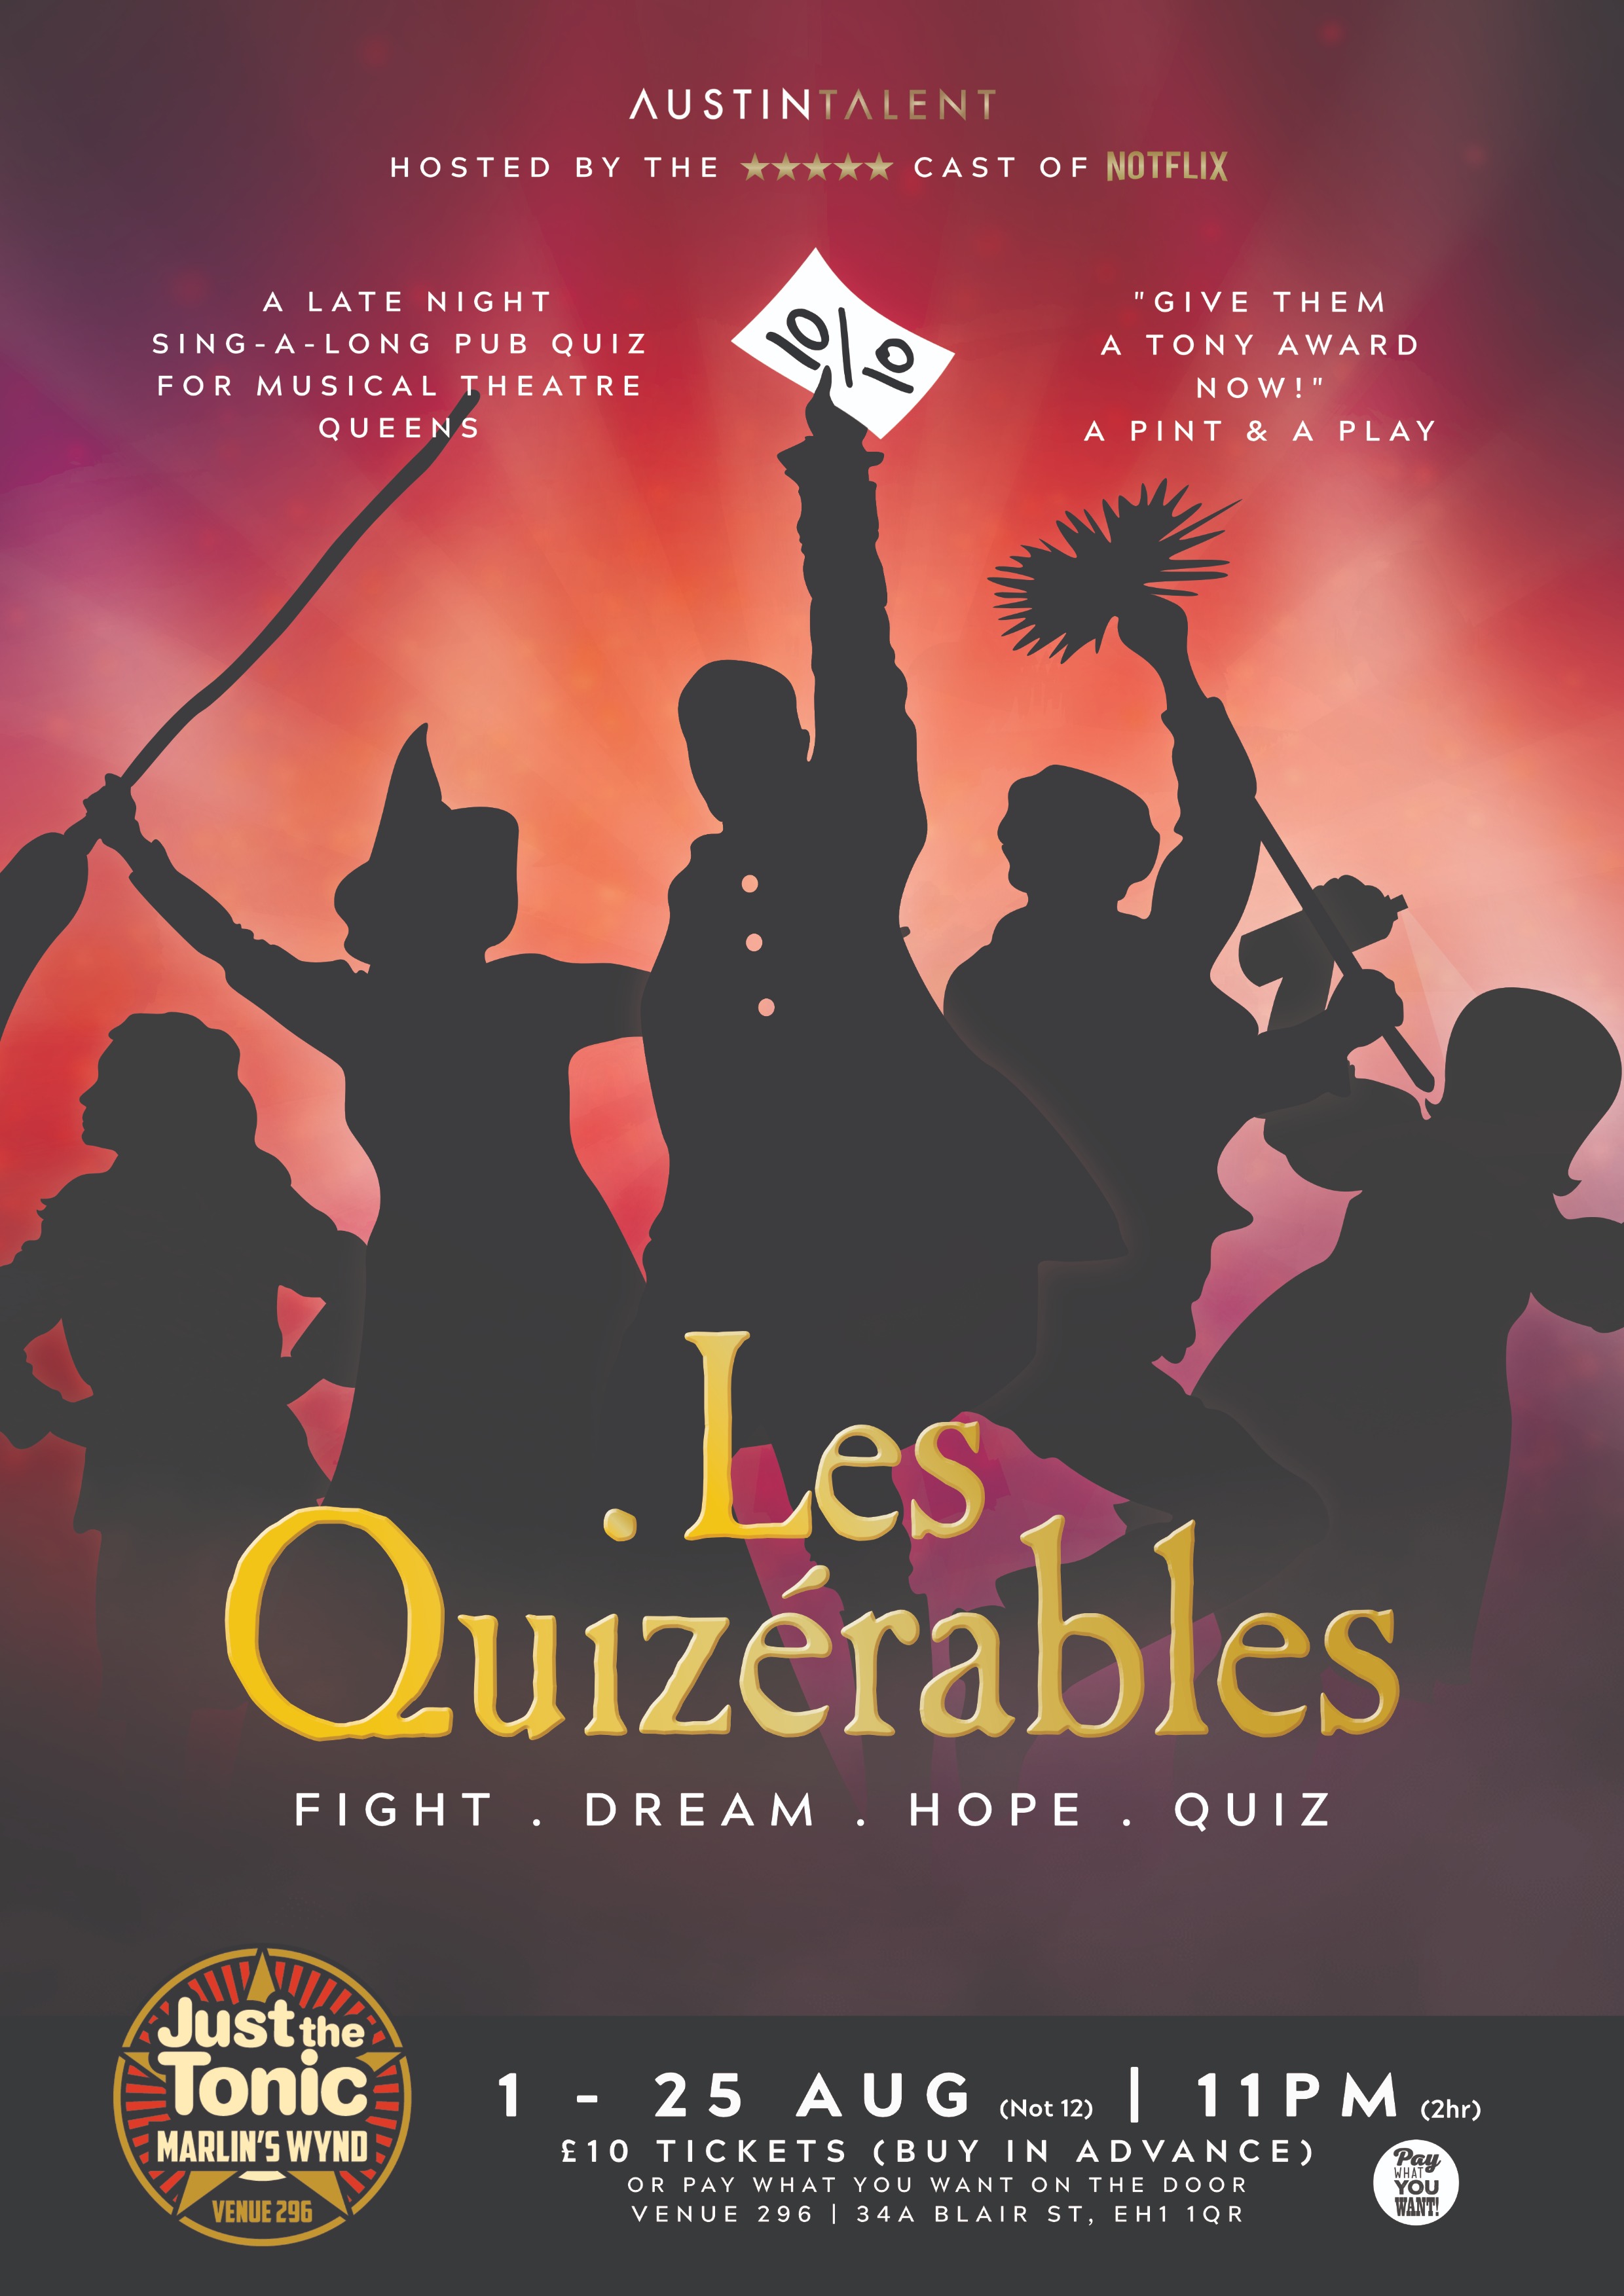 The poster for Les Quizérables